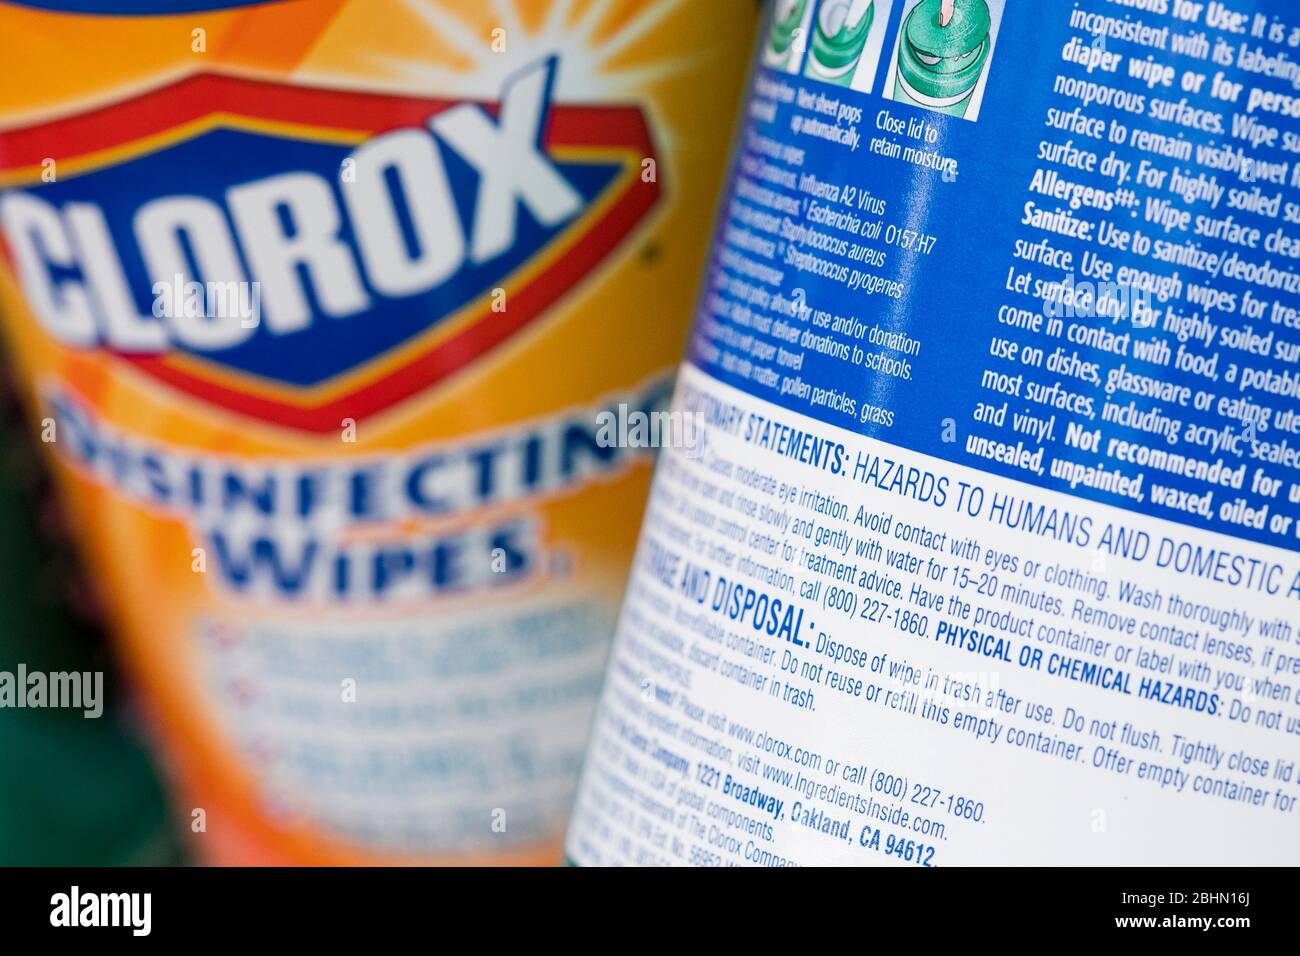 Un regroupement de produits désinfectants Clorox avec un avertissement indiquant qu'ils sont des « dangers pour l'homme » disposés pour une photographie. Banque D'Images